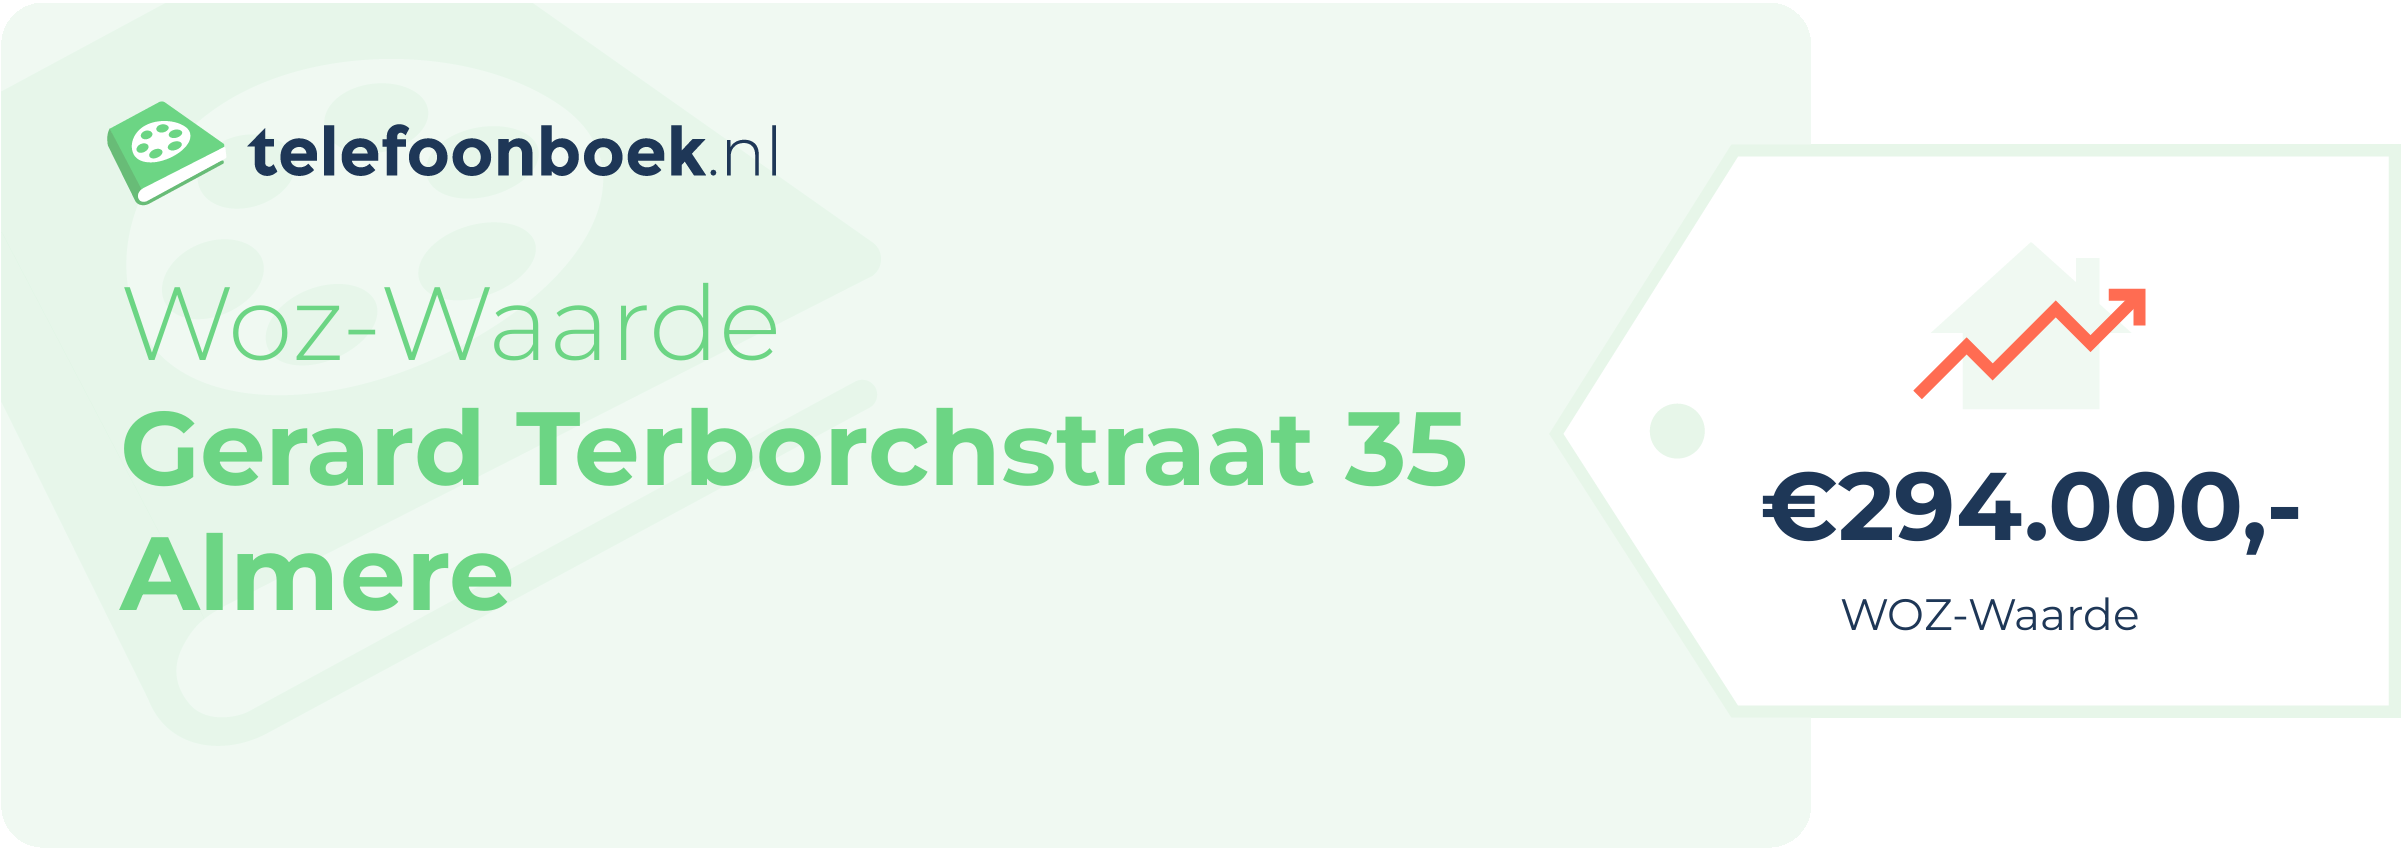 WOZ-waarde Gerard Terborchstraat 35 Almere